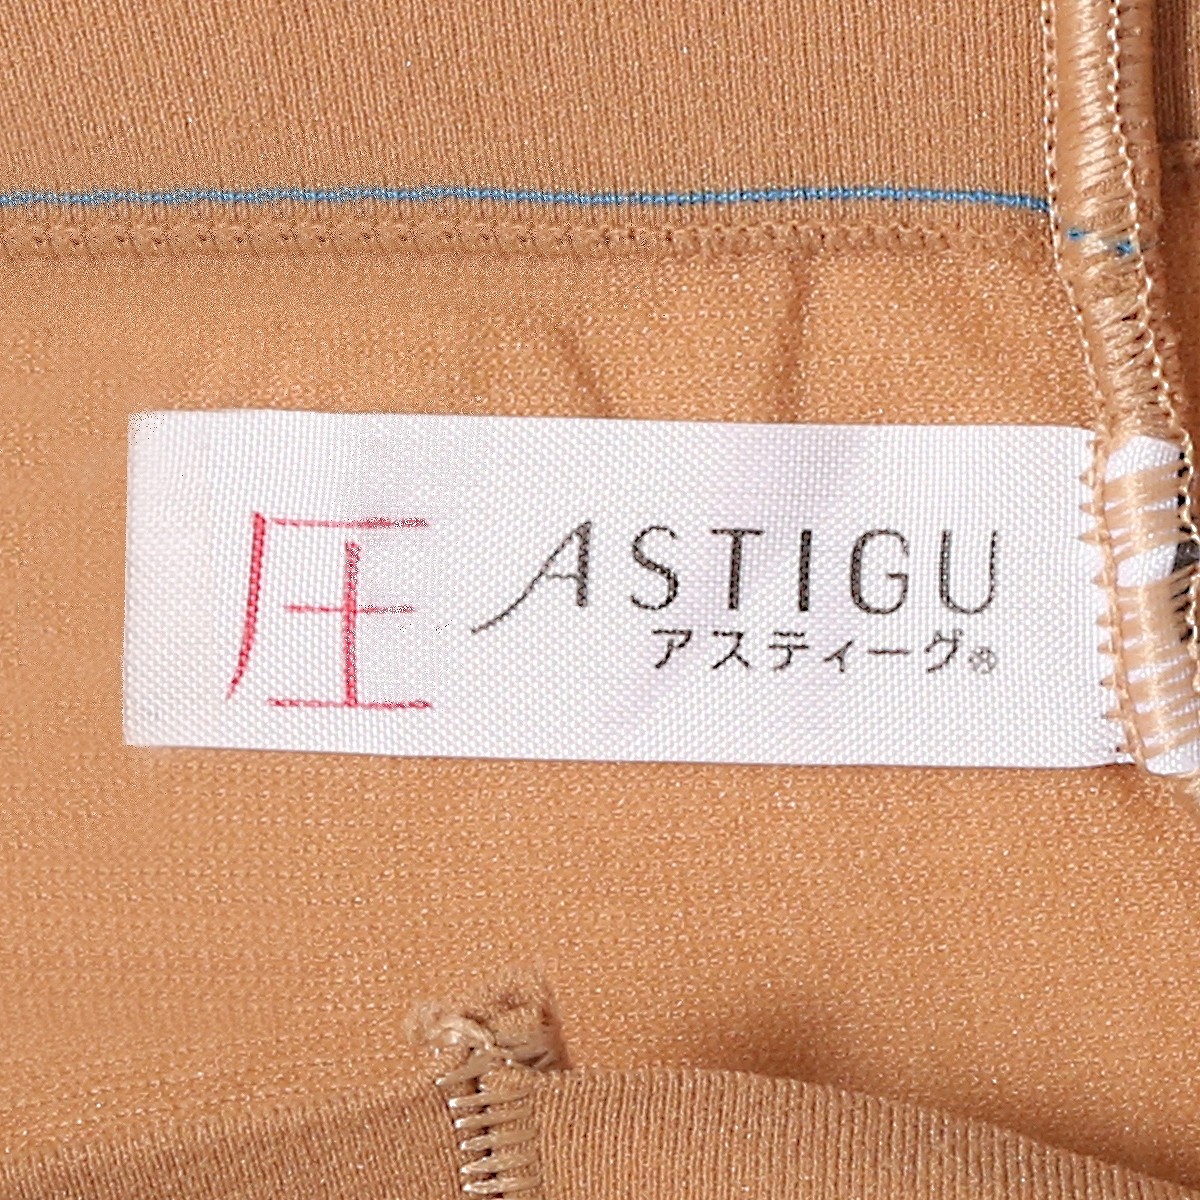 ASTIGU 【圧】 引き締め ストッキング